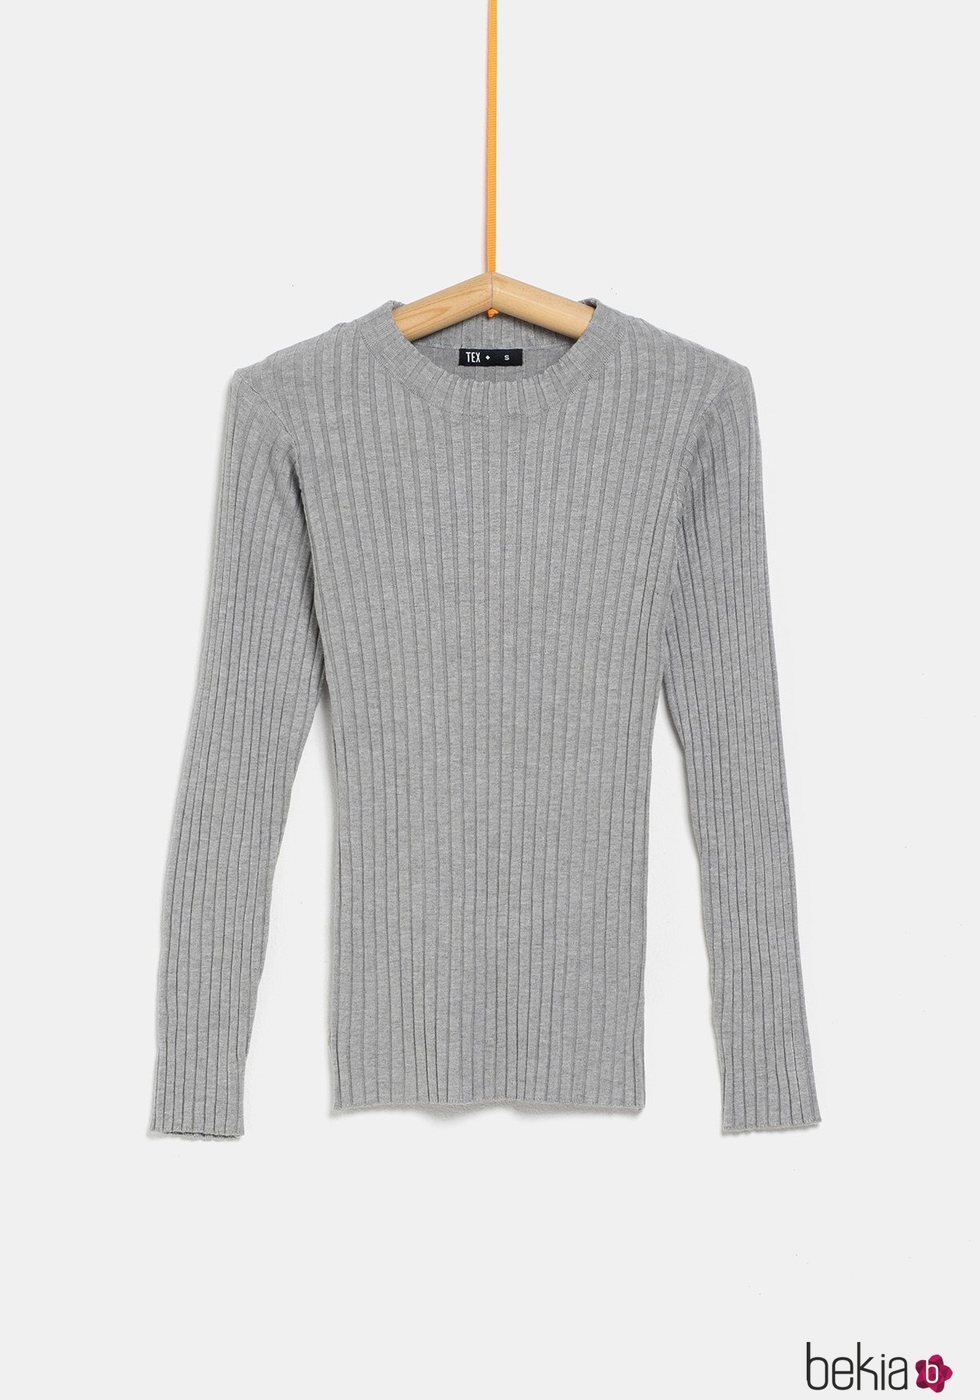 Jersey gris ceñido de la colección 'I-O' de Carrefour y TEX para otoño/invierno 2019